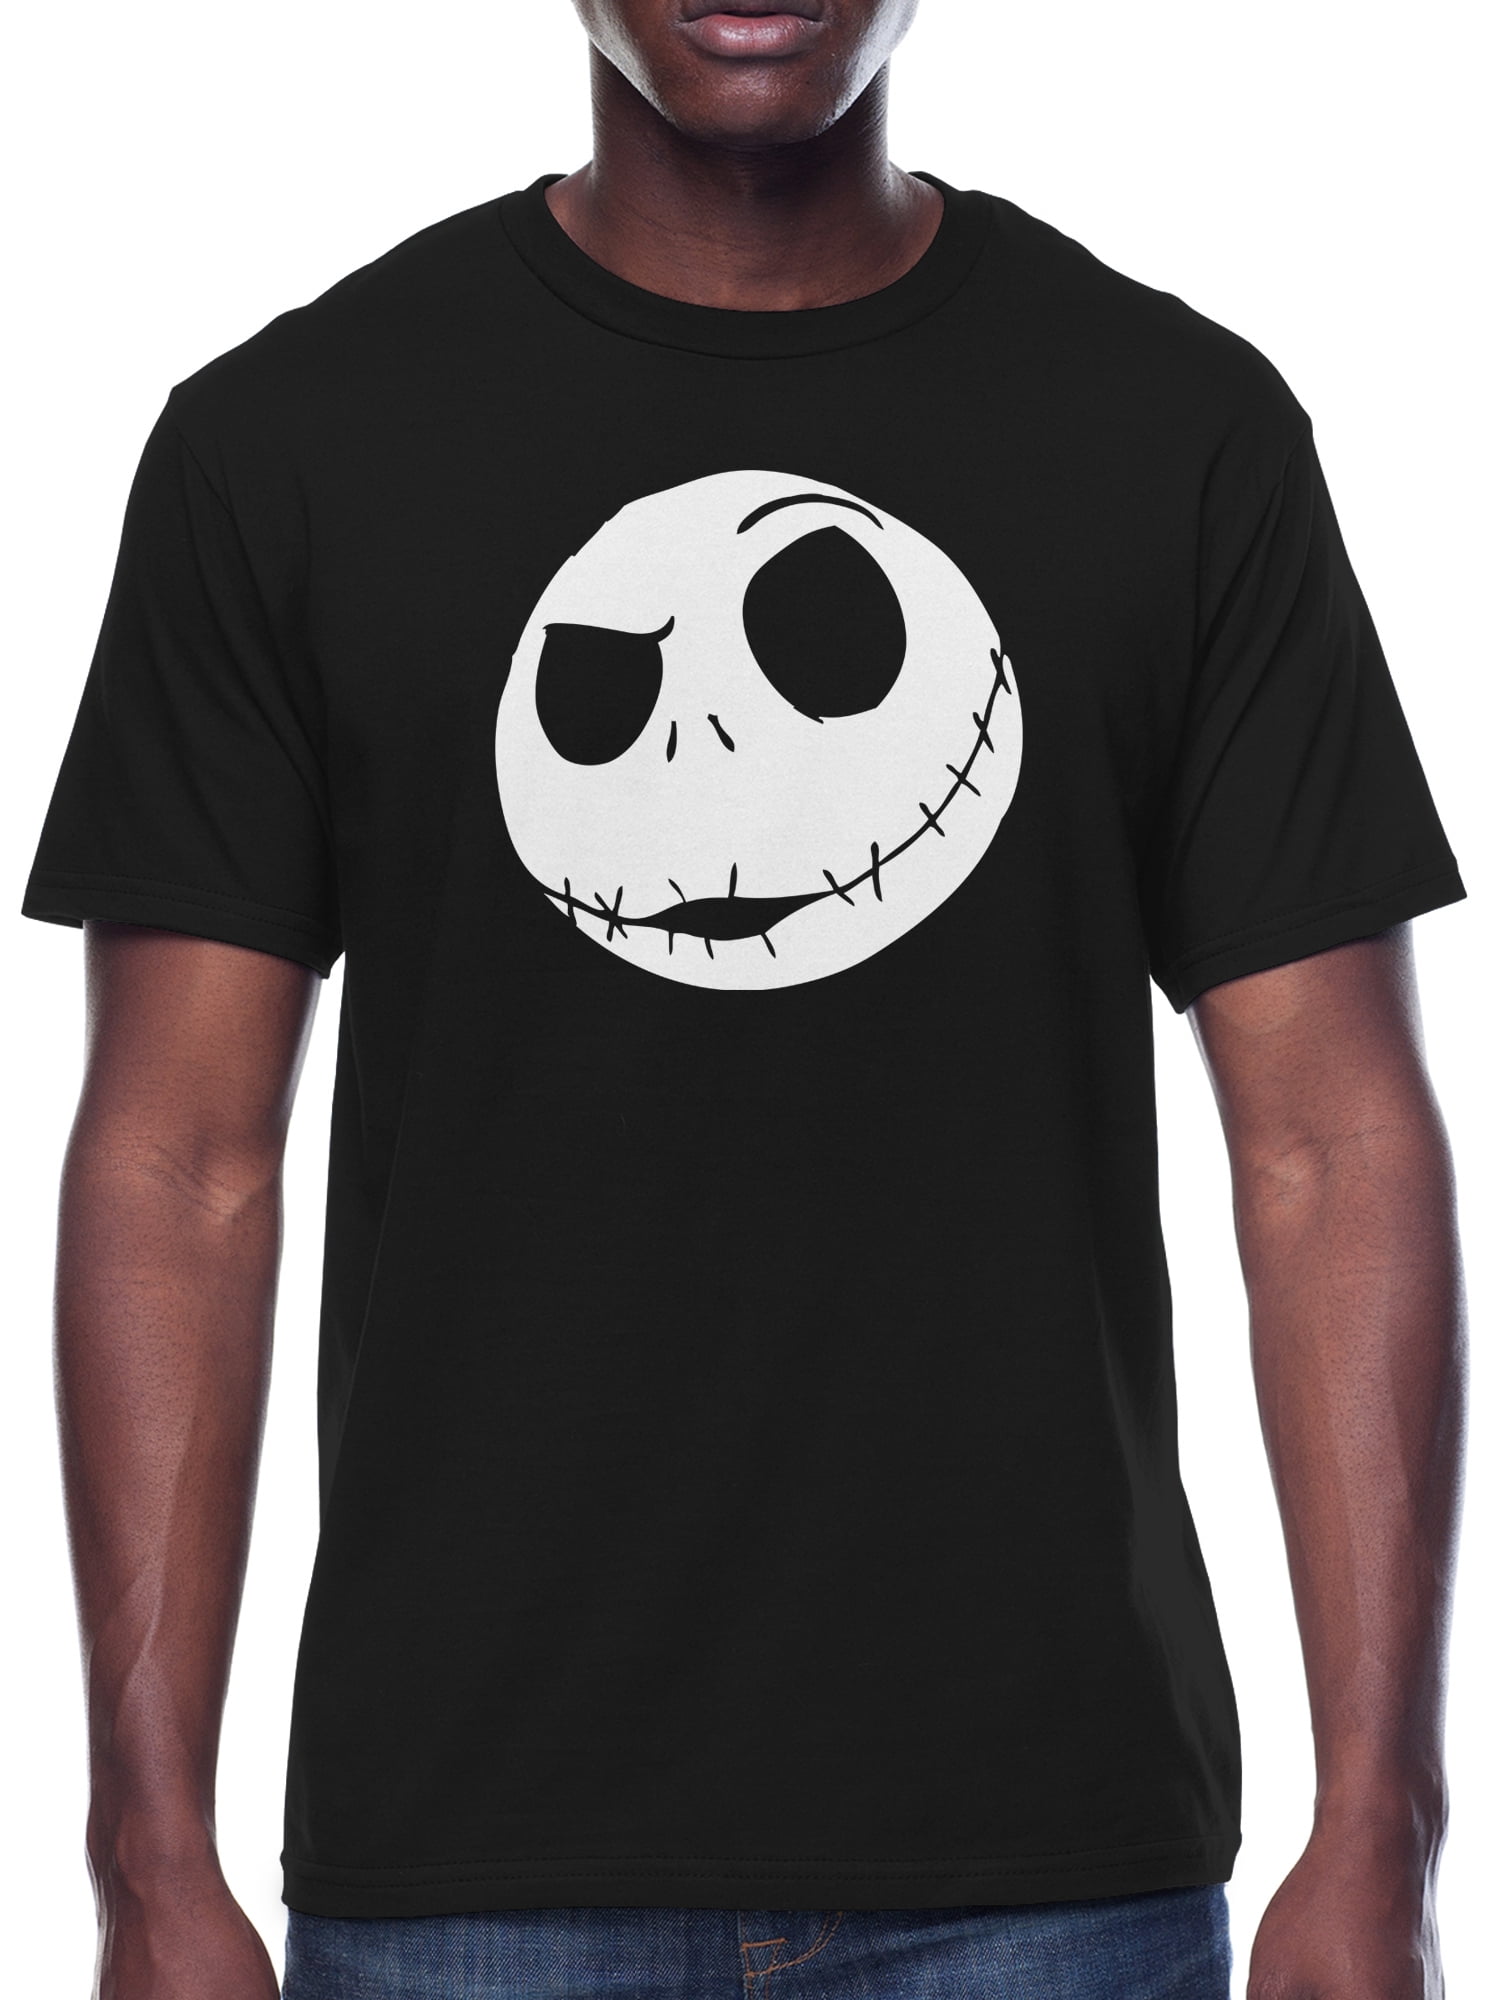 Nightmare Before Christmas Halloween Whiskey Jack Skellington's Brewery Halloween T-shirt Cute Skeleton Large Shirt Kids